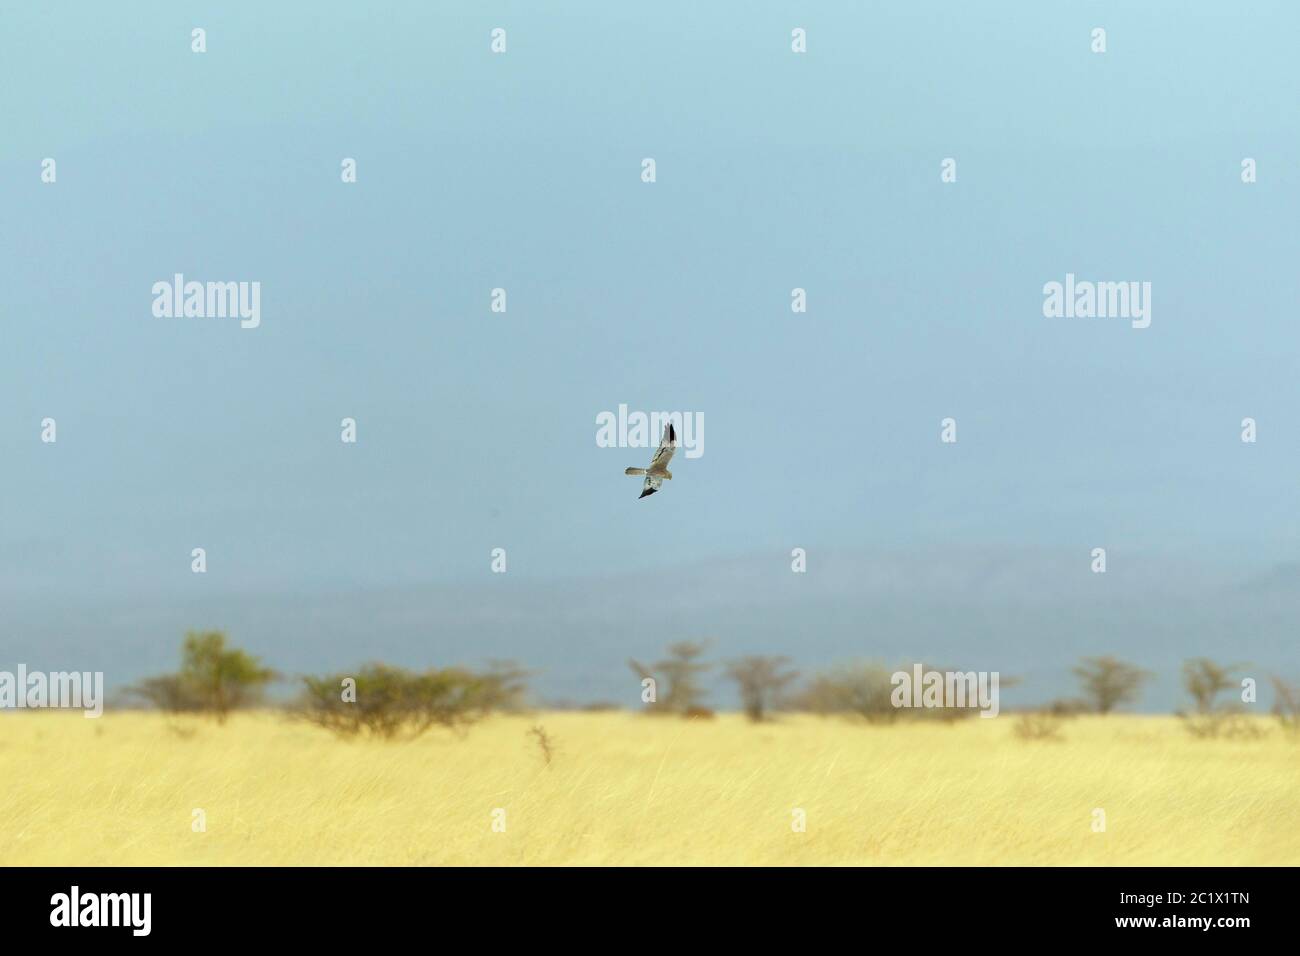 Le harrier de montague (Circus pygargus), mâle volant au-dessus des plaines herbeuses, hivernant en Éthiopie, en Éthiopie Banque D'Images